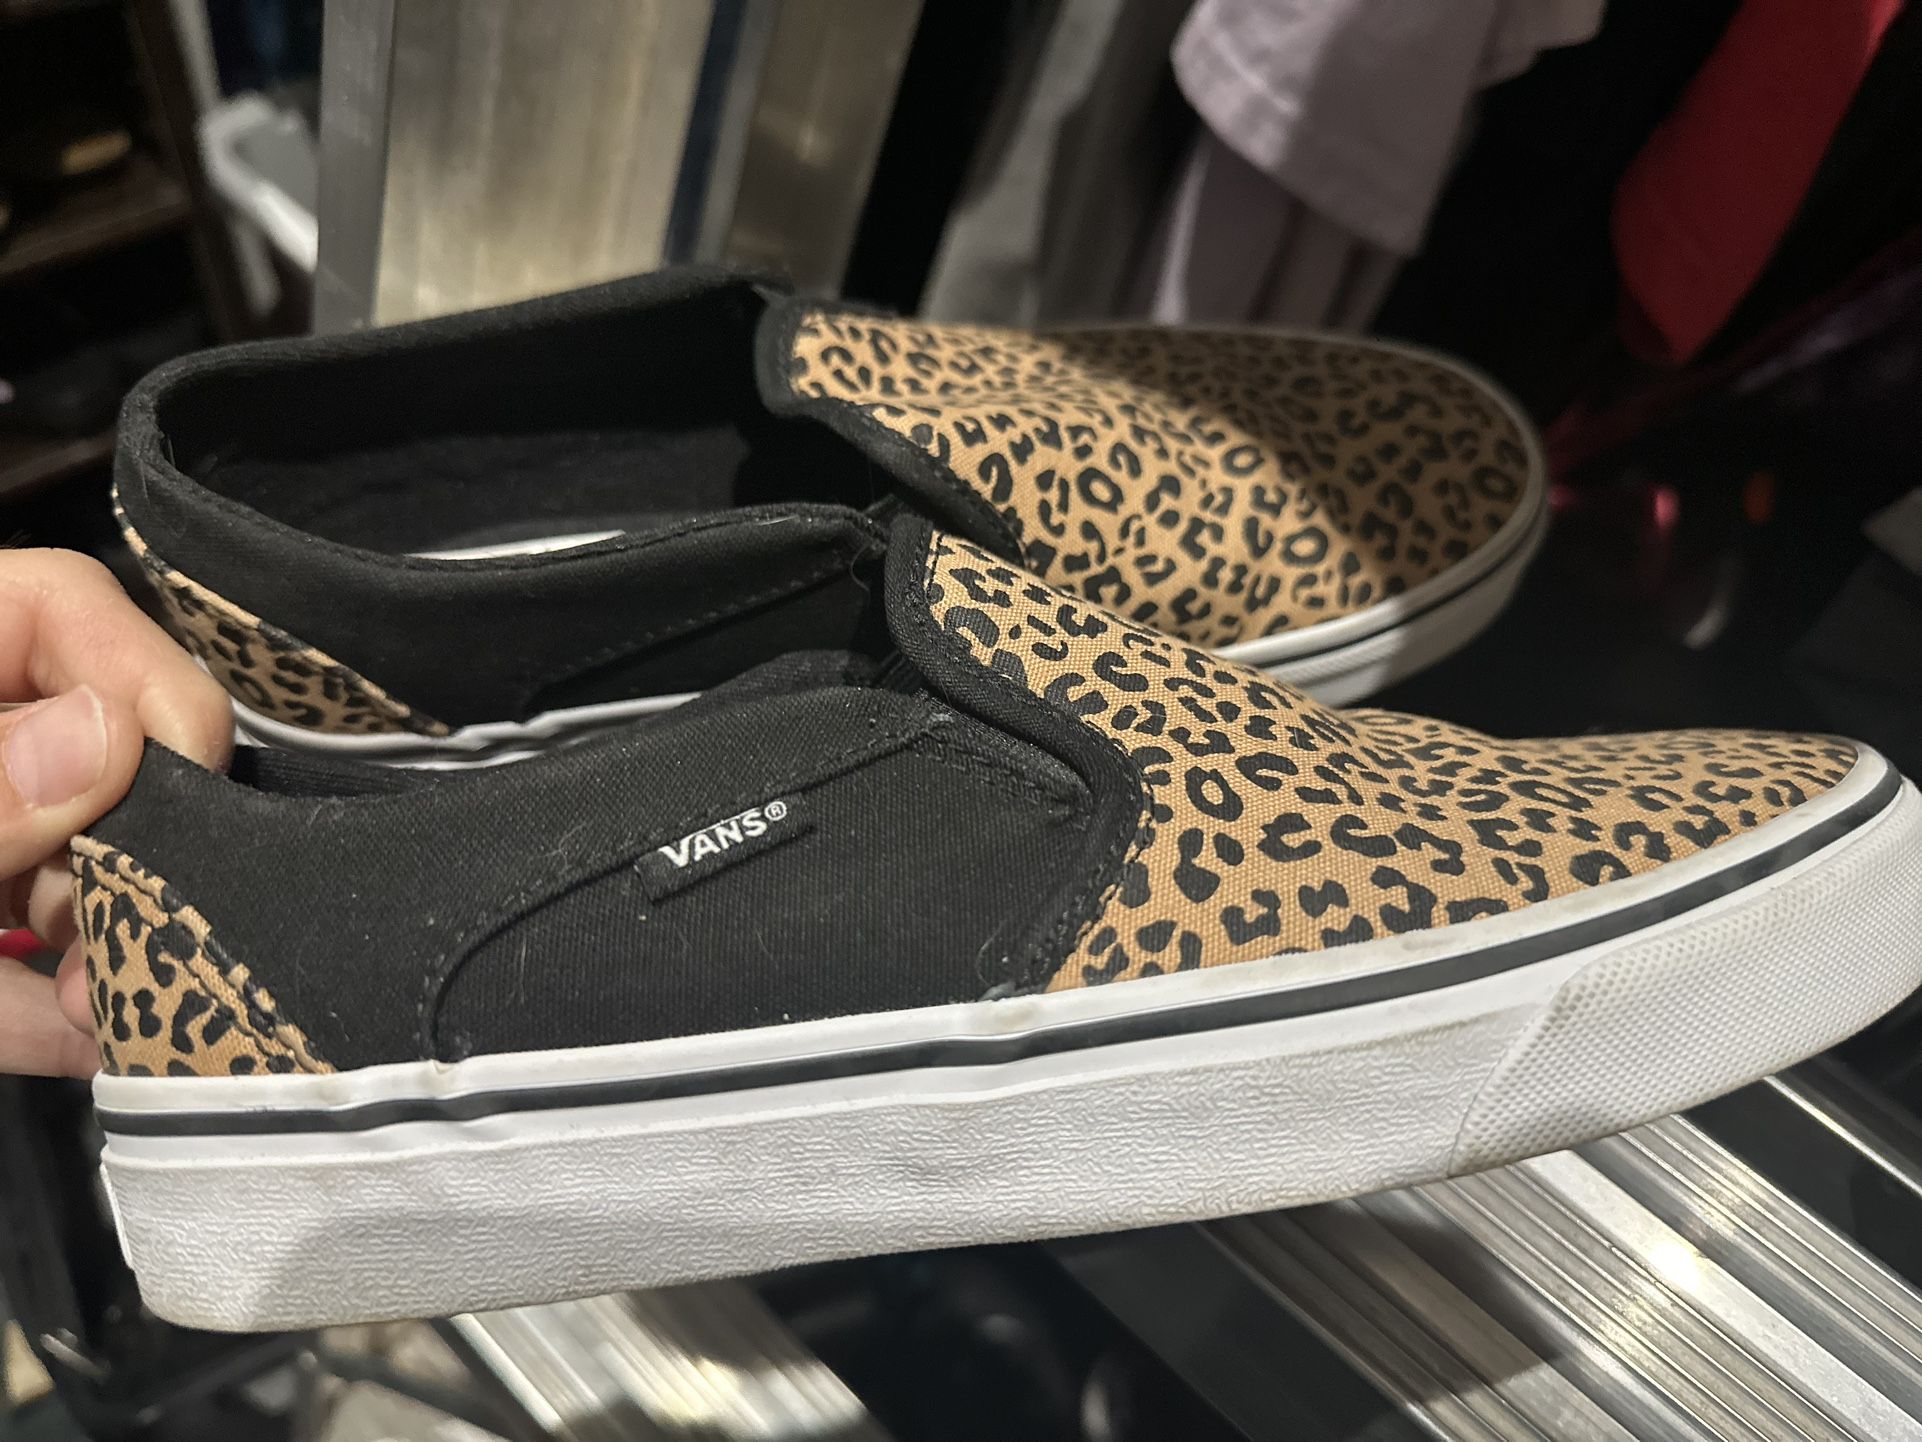 Slip On Vans Black And Leopard Pattern